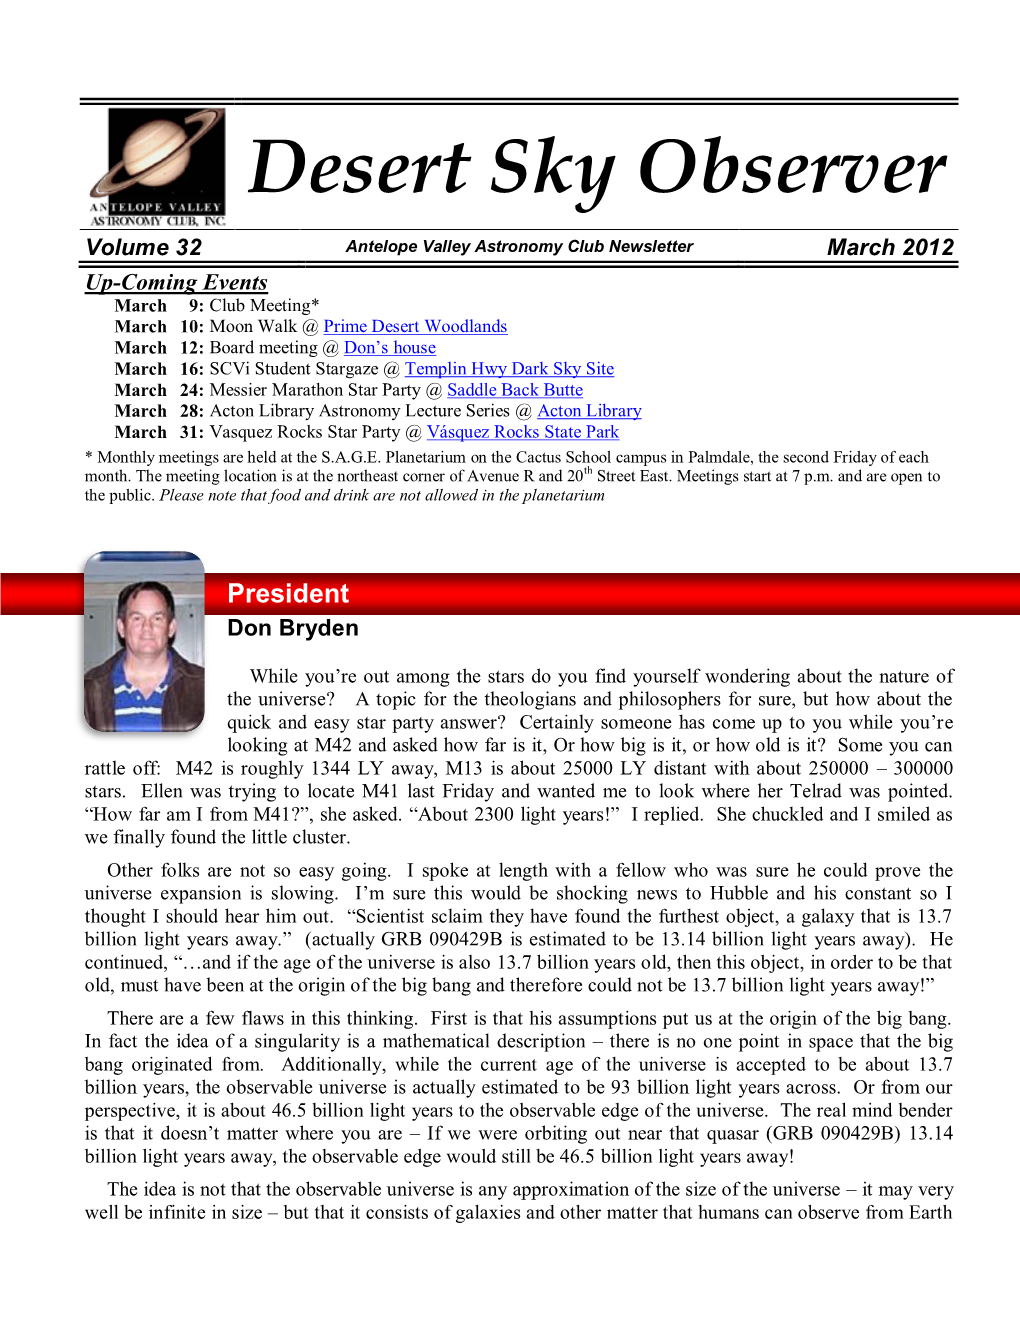 The Desert Sky Observer